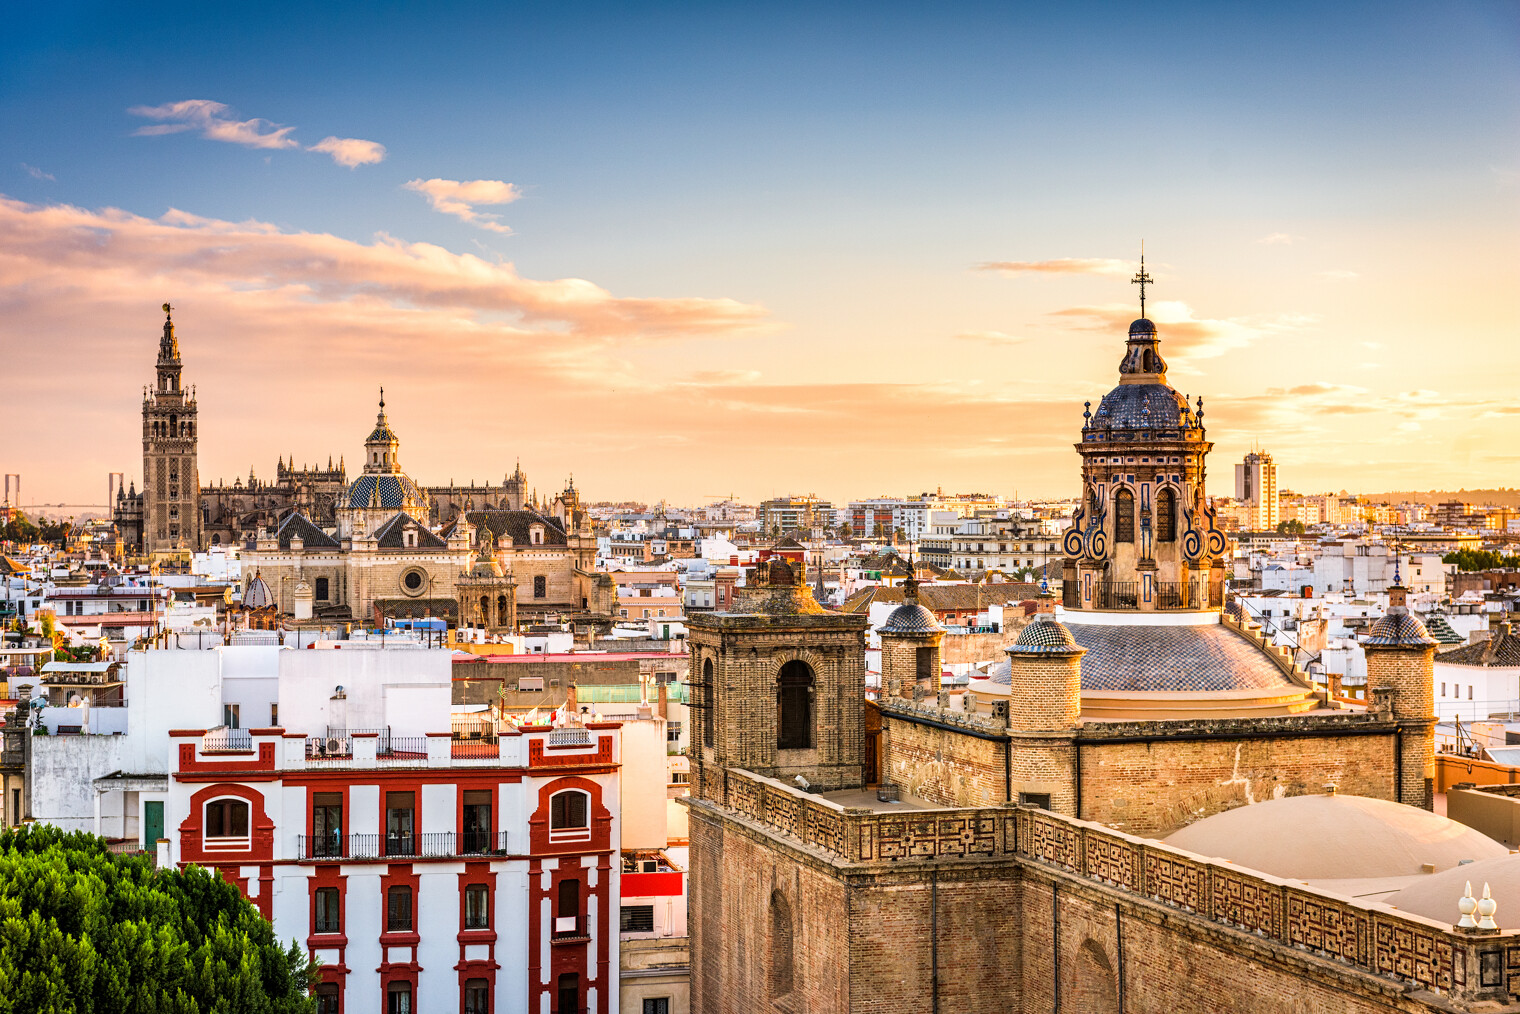 Vue sur la ville de Seville depuis les toits